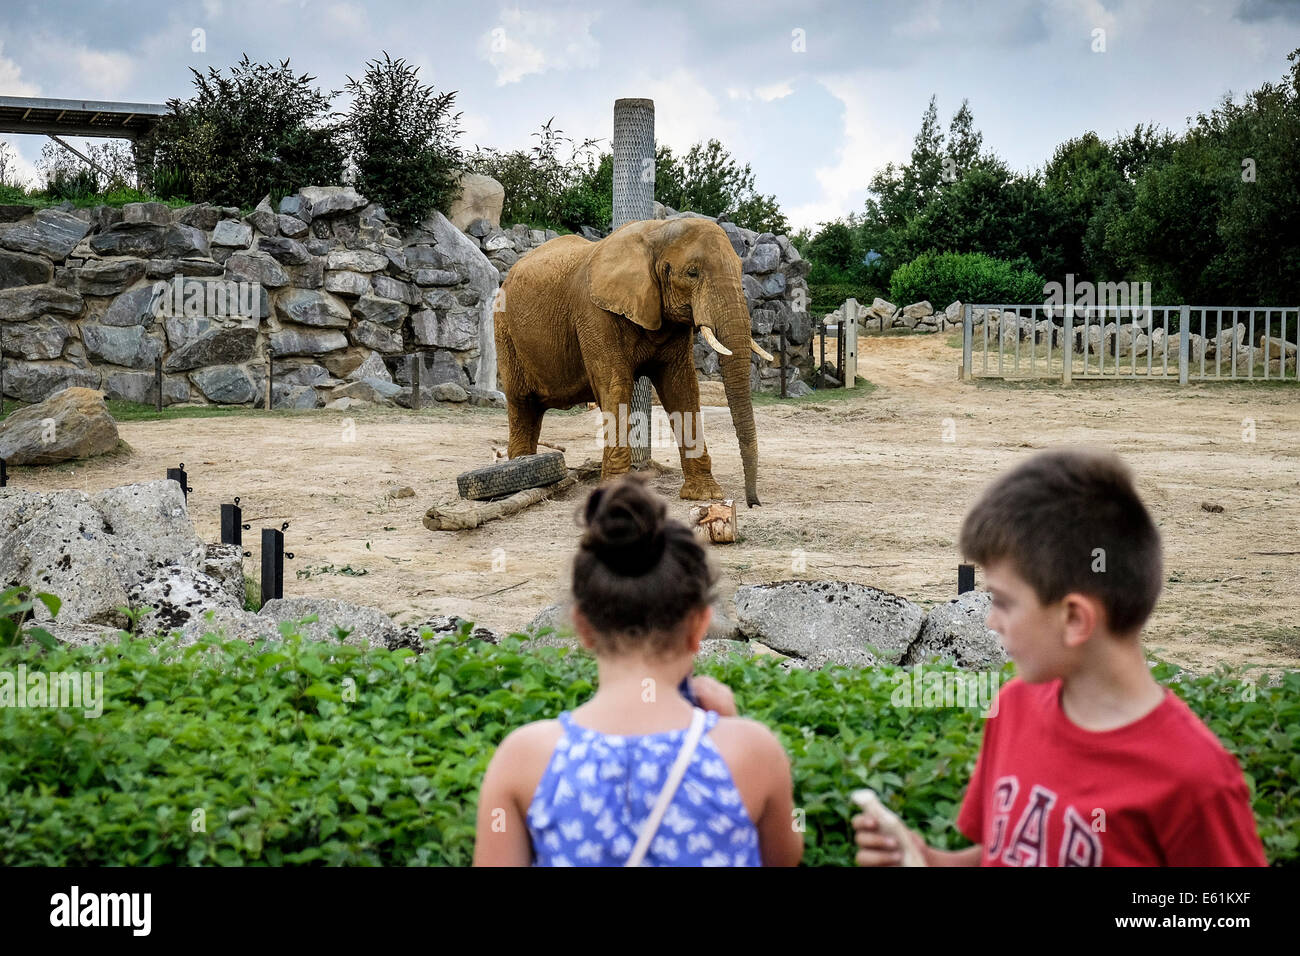 Les enfants à la recherche à un éléphant d'Afrique Loxodonta africana dans un zoo. Banque D'Images